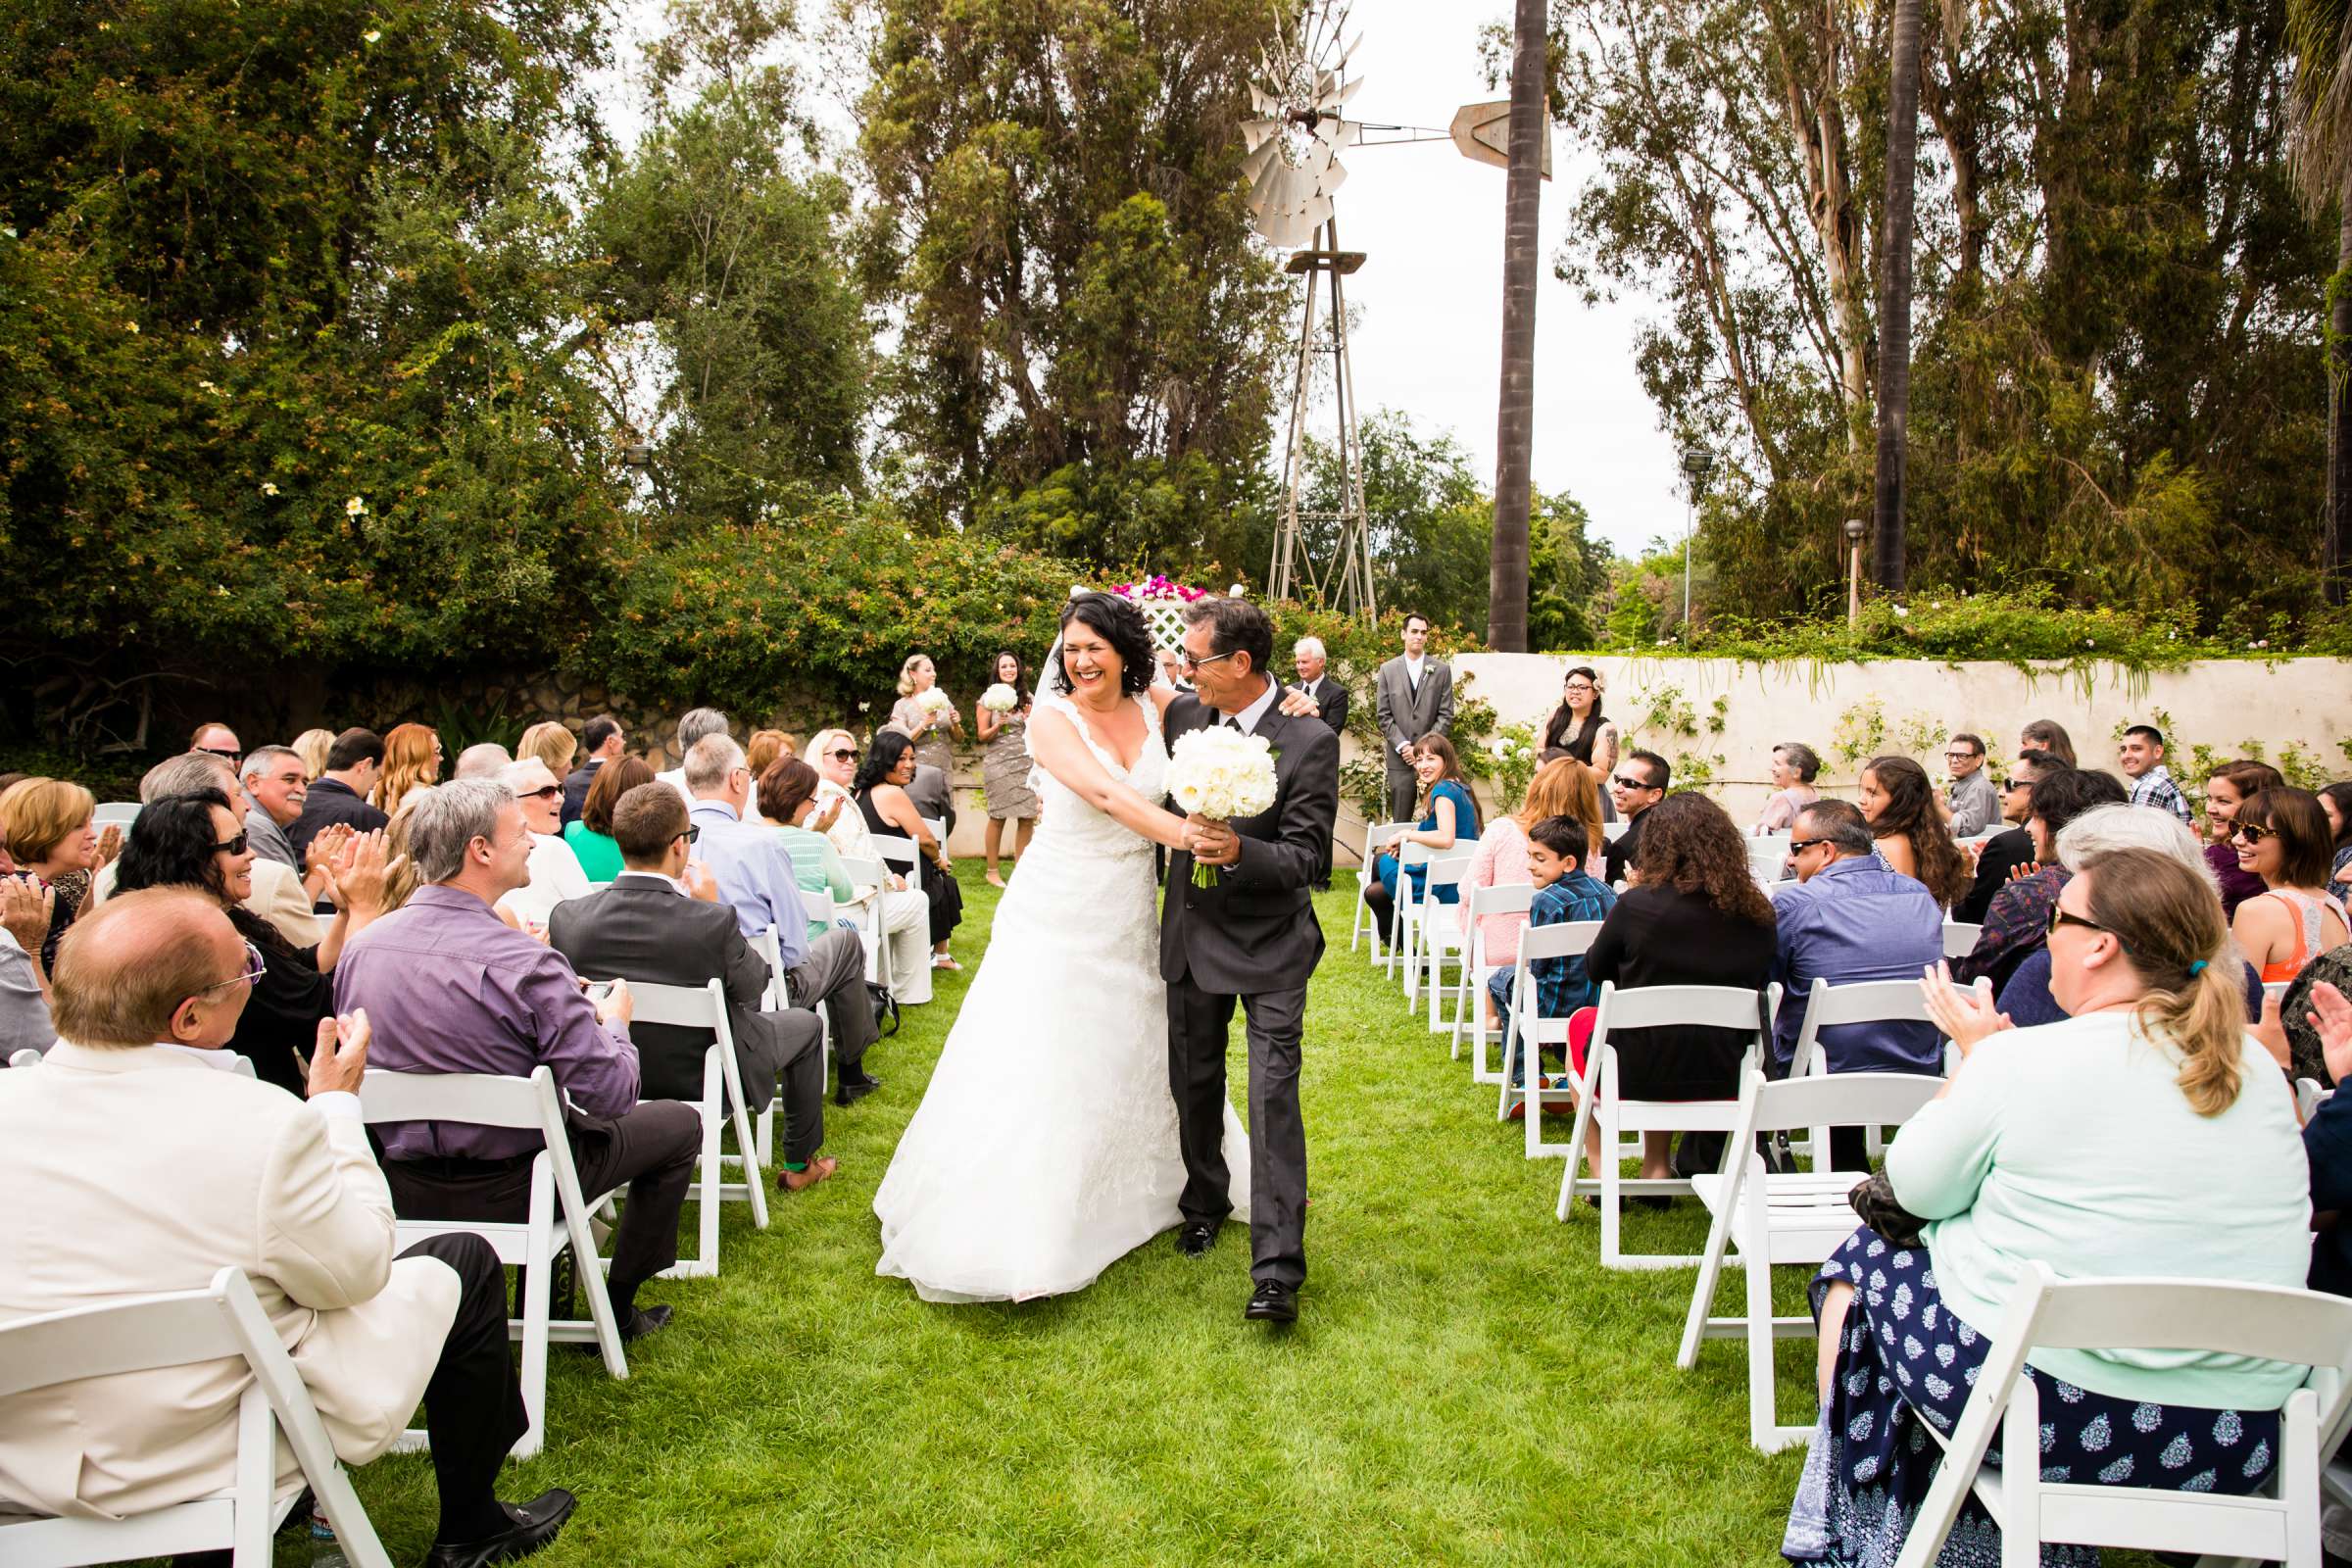 Rancho Buena Vista Adobe Wedding, Ellinor and Frank Wedding Photo #29 by True Photography